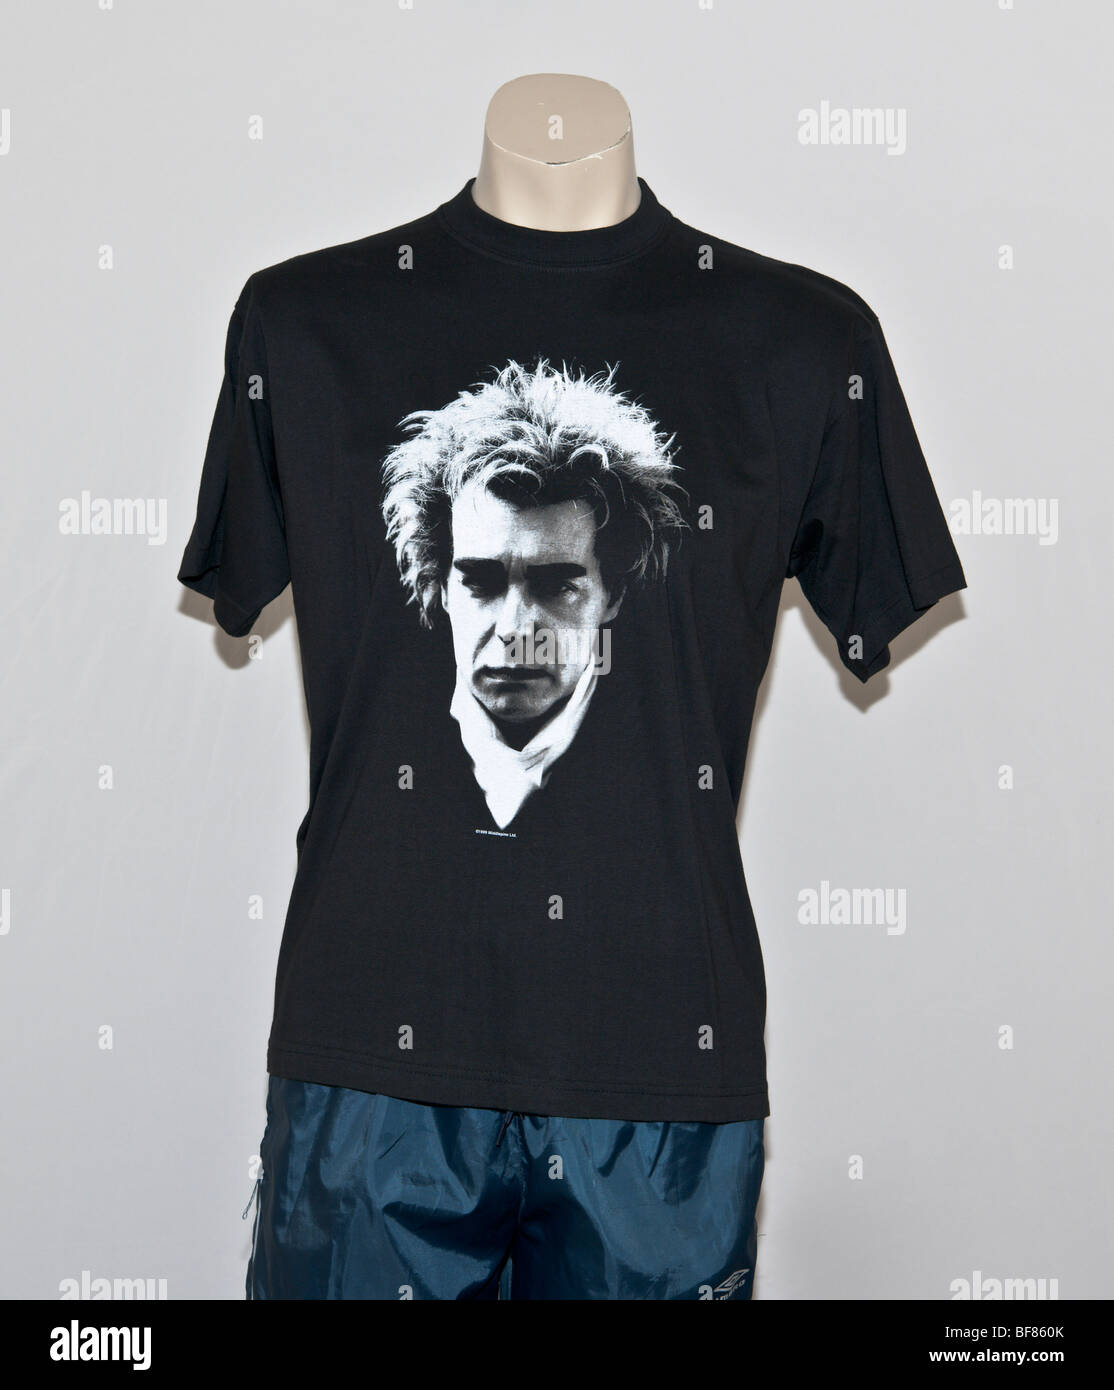 T-Shirt mit einem schwarz-weißen Porträt von Neil Tennant Lead-Sänger von Pet Shop Boys, einer englischen Popgruppe. Nightlife-Album Stockfoto